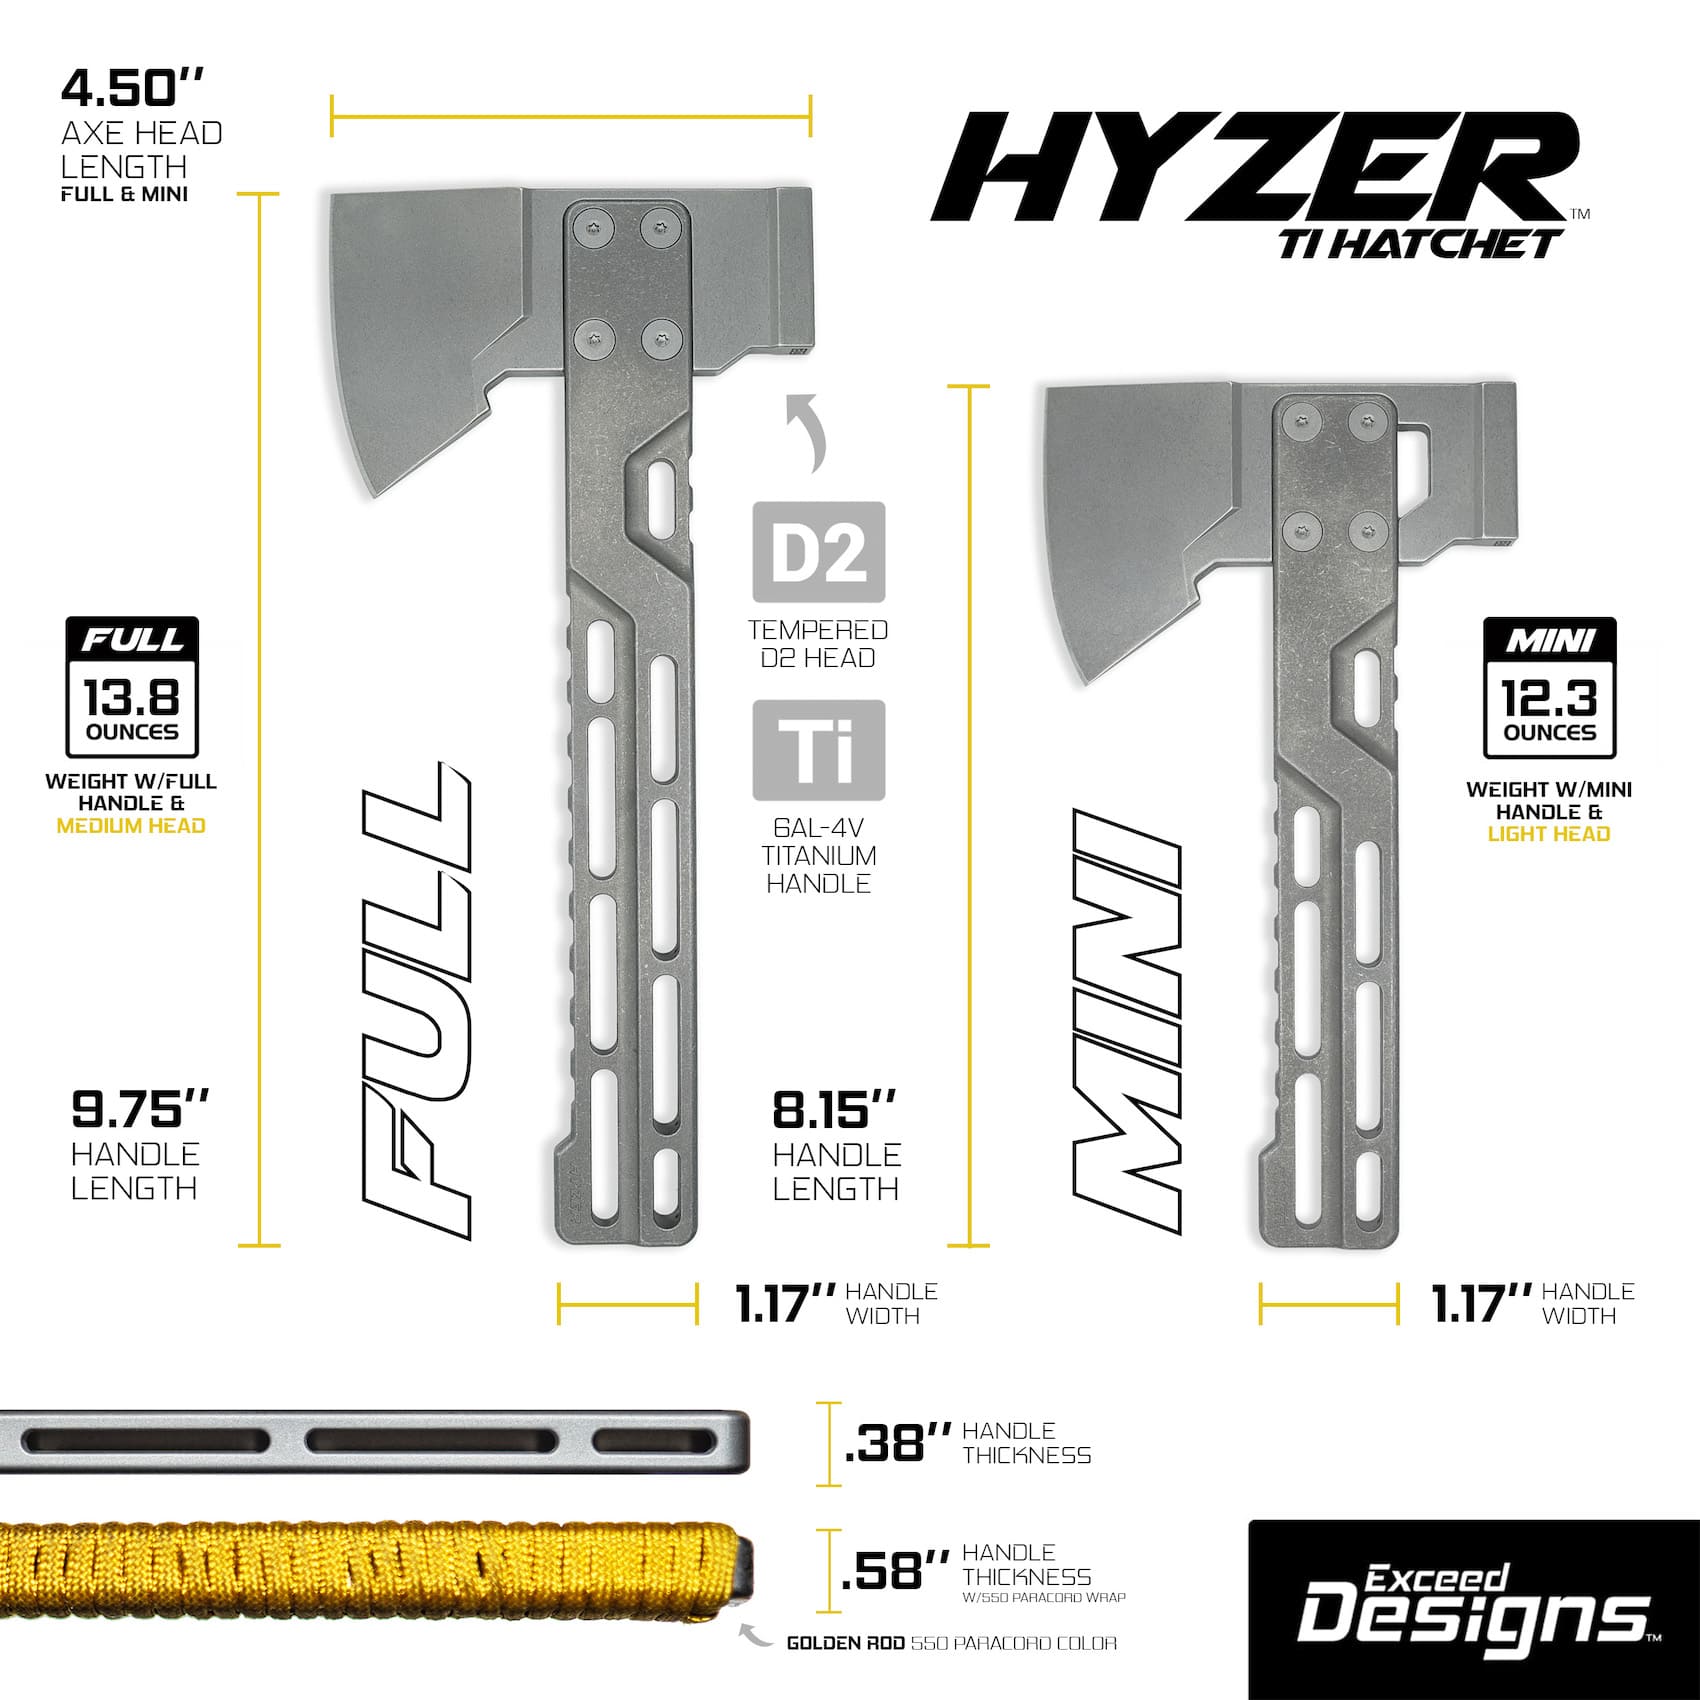 Exceed Designs - HYZER Titanium Hatchet